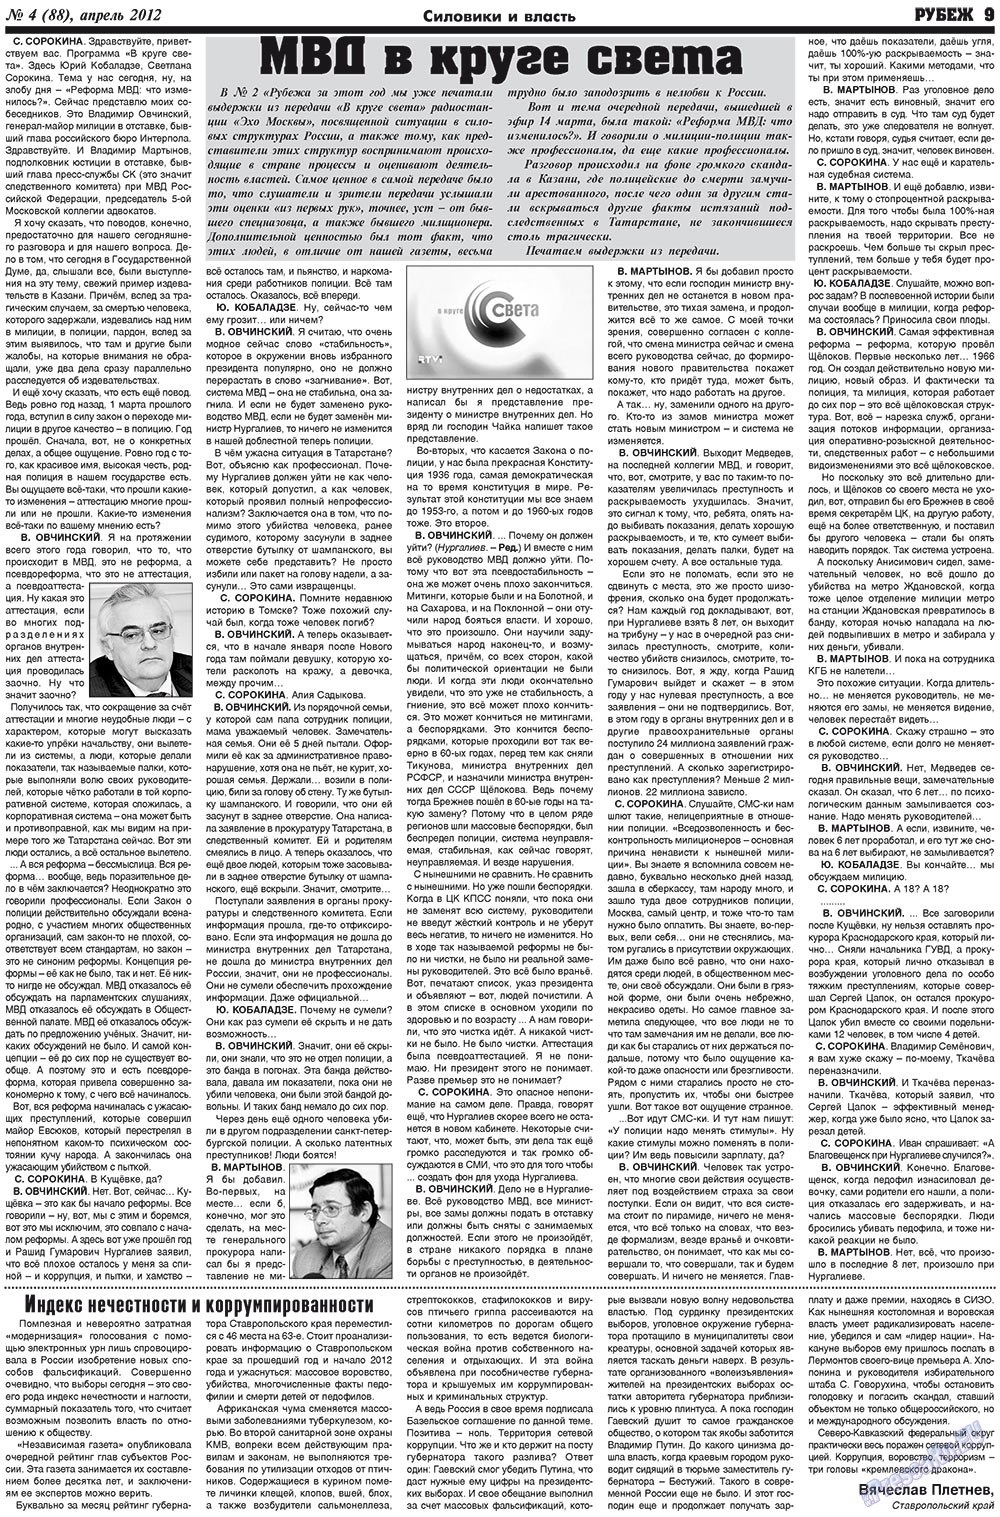 Рубеж (газета). 2012 год, номер 4, стр. 9